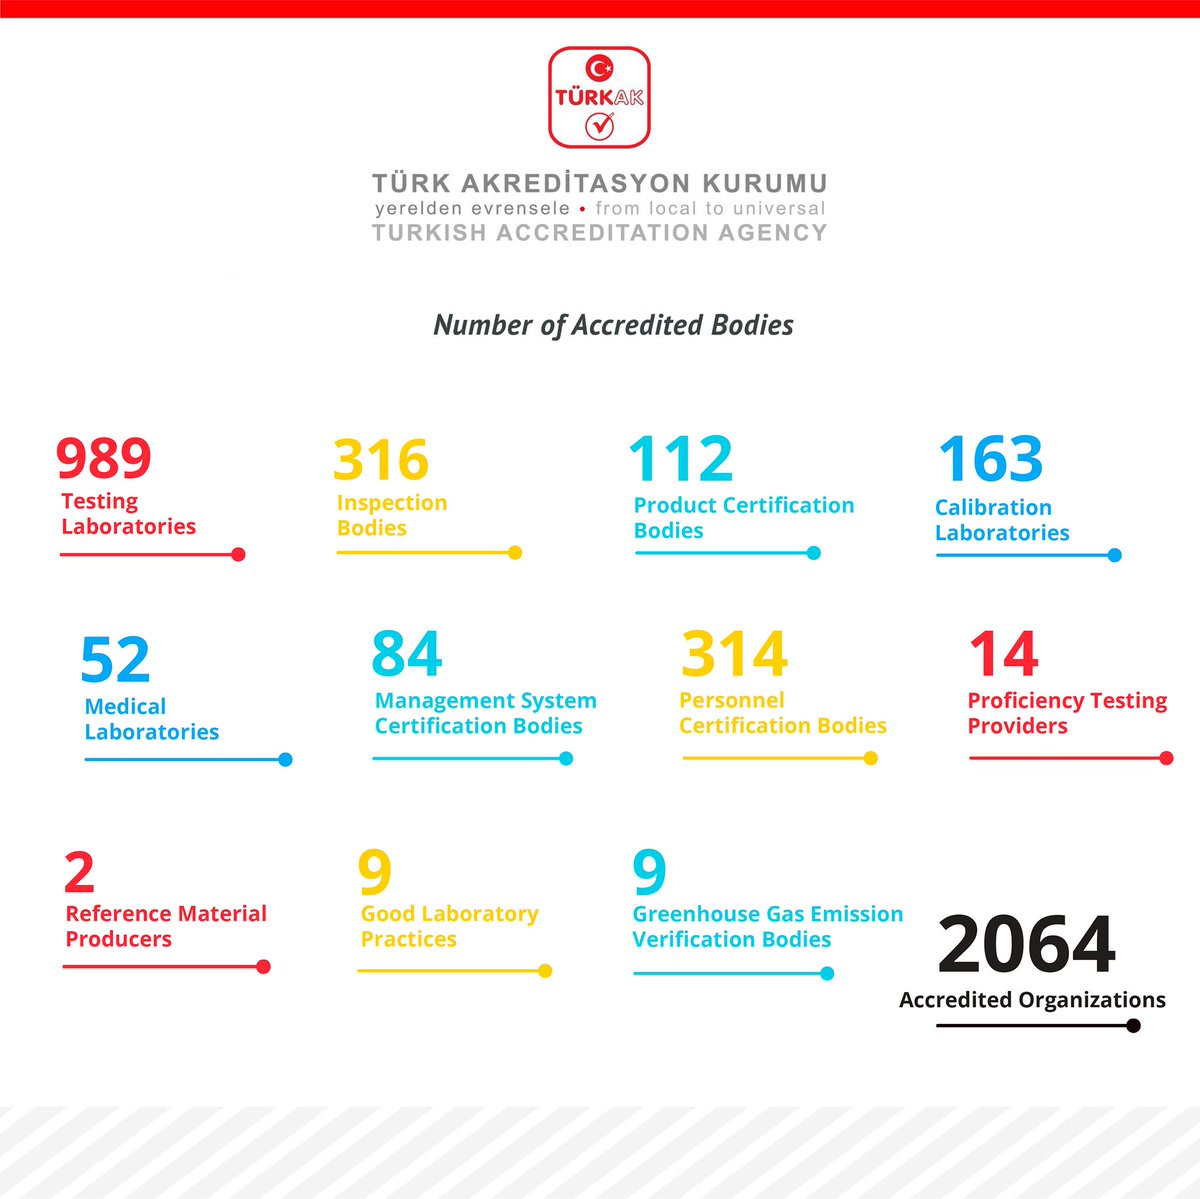 #SayılarlaTÜRKAK 🔻 Ekim 2022 itibarıyla #TÜRKAK tarafından akredite edilen toplam kuruluş sayısı 2064’e ulaştı. 🔻 As of October 2022, the total number of bodies accredited by #TÜRKAK reached 2064. #akreditasyon #accreditation